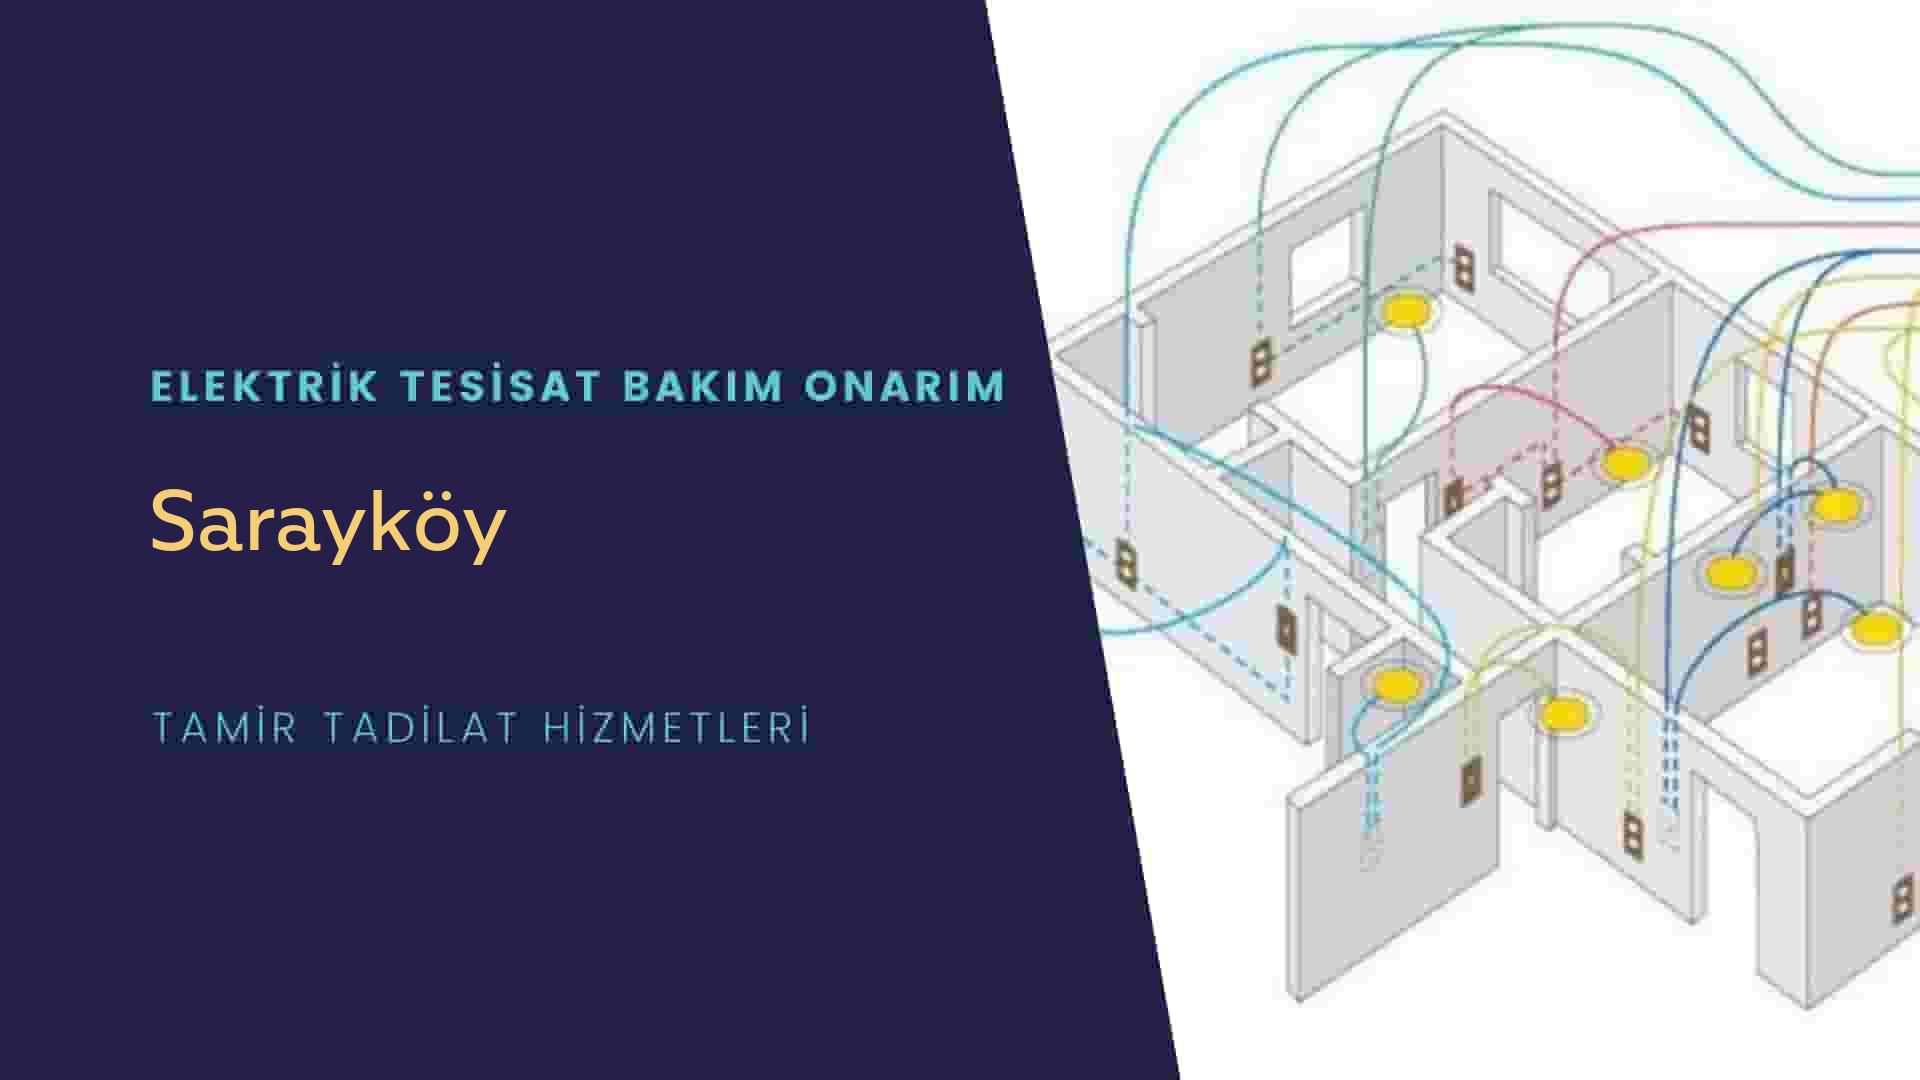 Sarayköy'de elektrik tesisatı ustalarımı arıyorsunuz doğru adrestenizi Sarayköy elektrik tesisatı ustalarımız 7/24 sizlere hizmet vermekten mutluluk duyar.